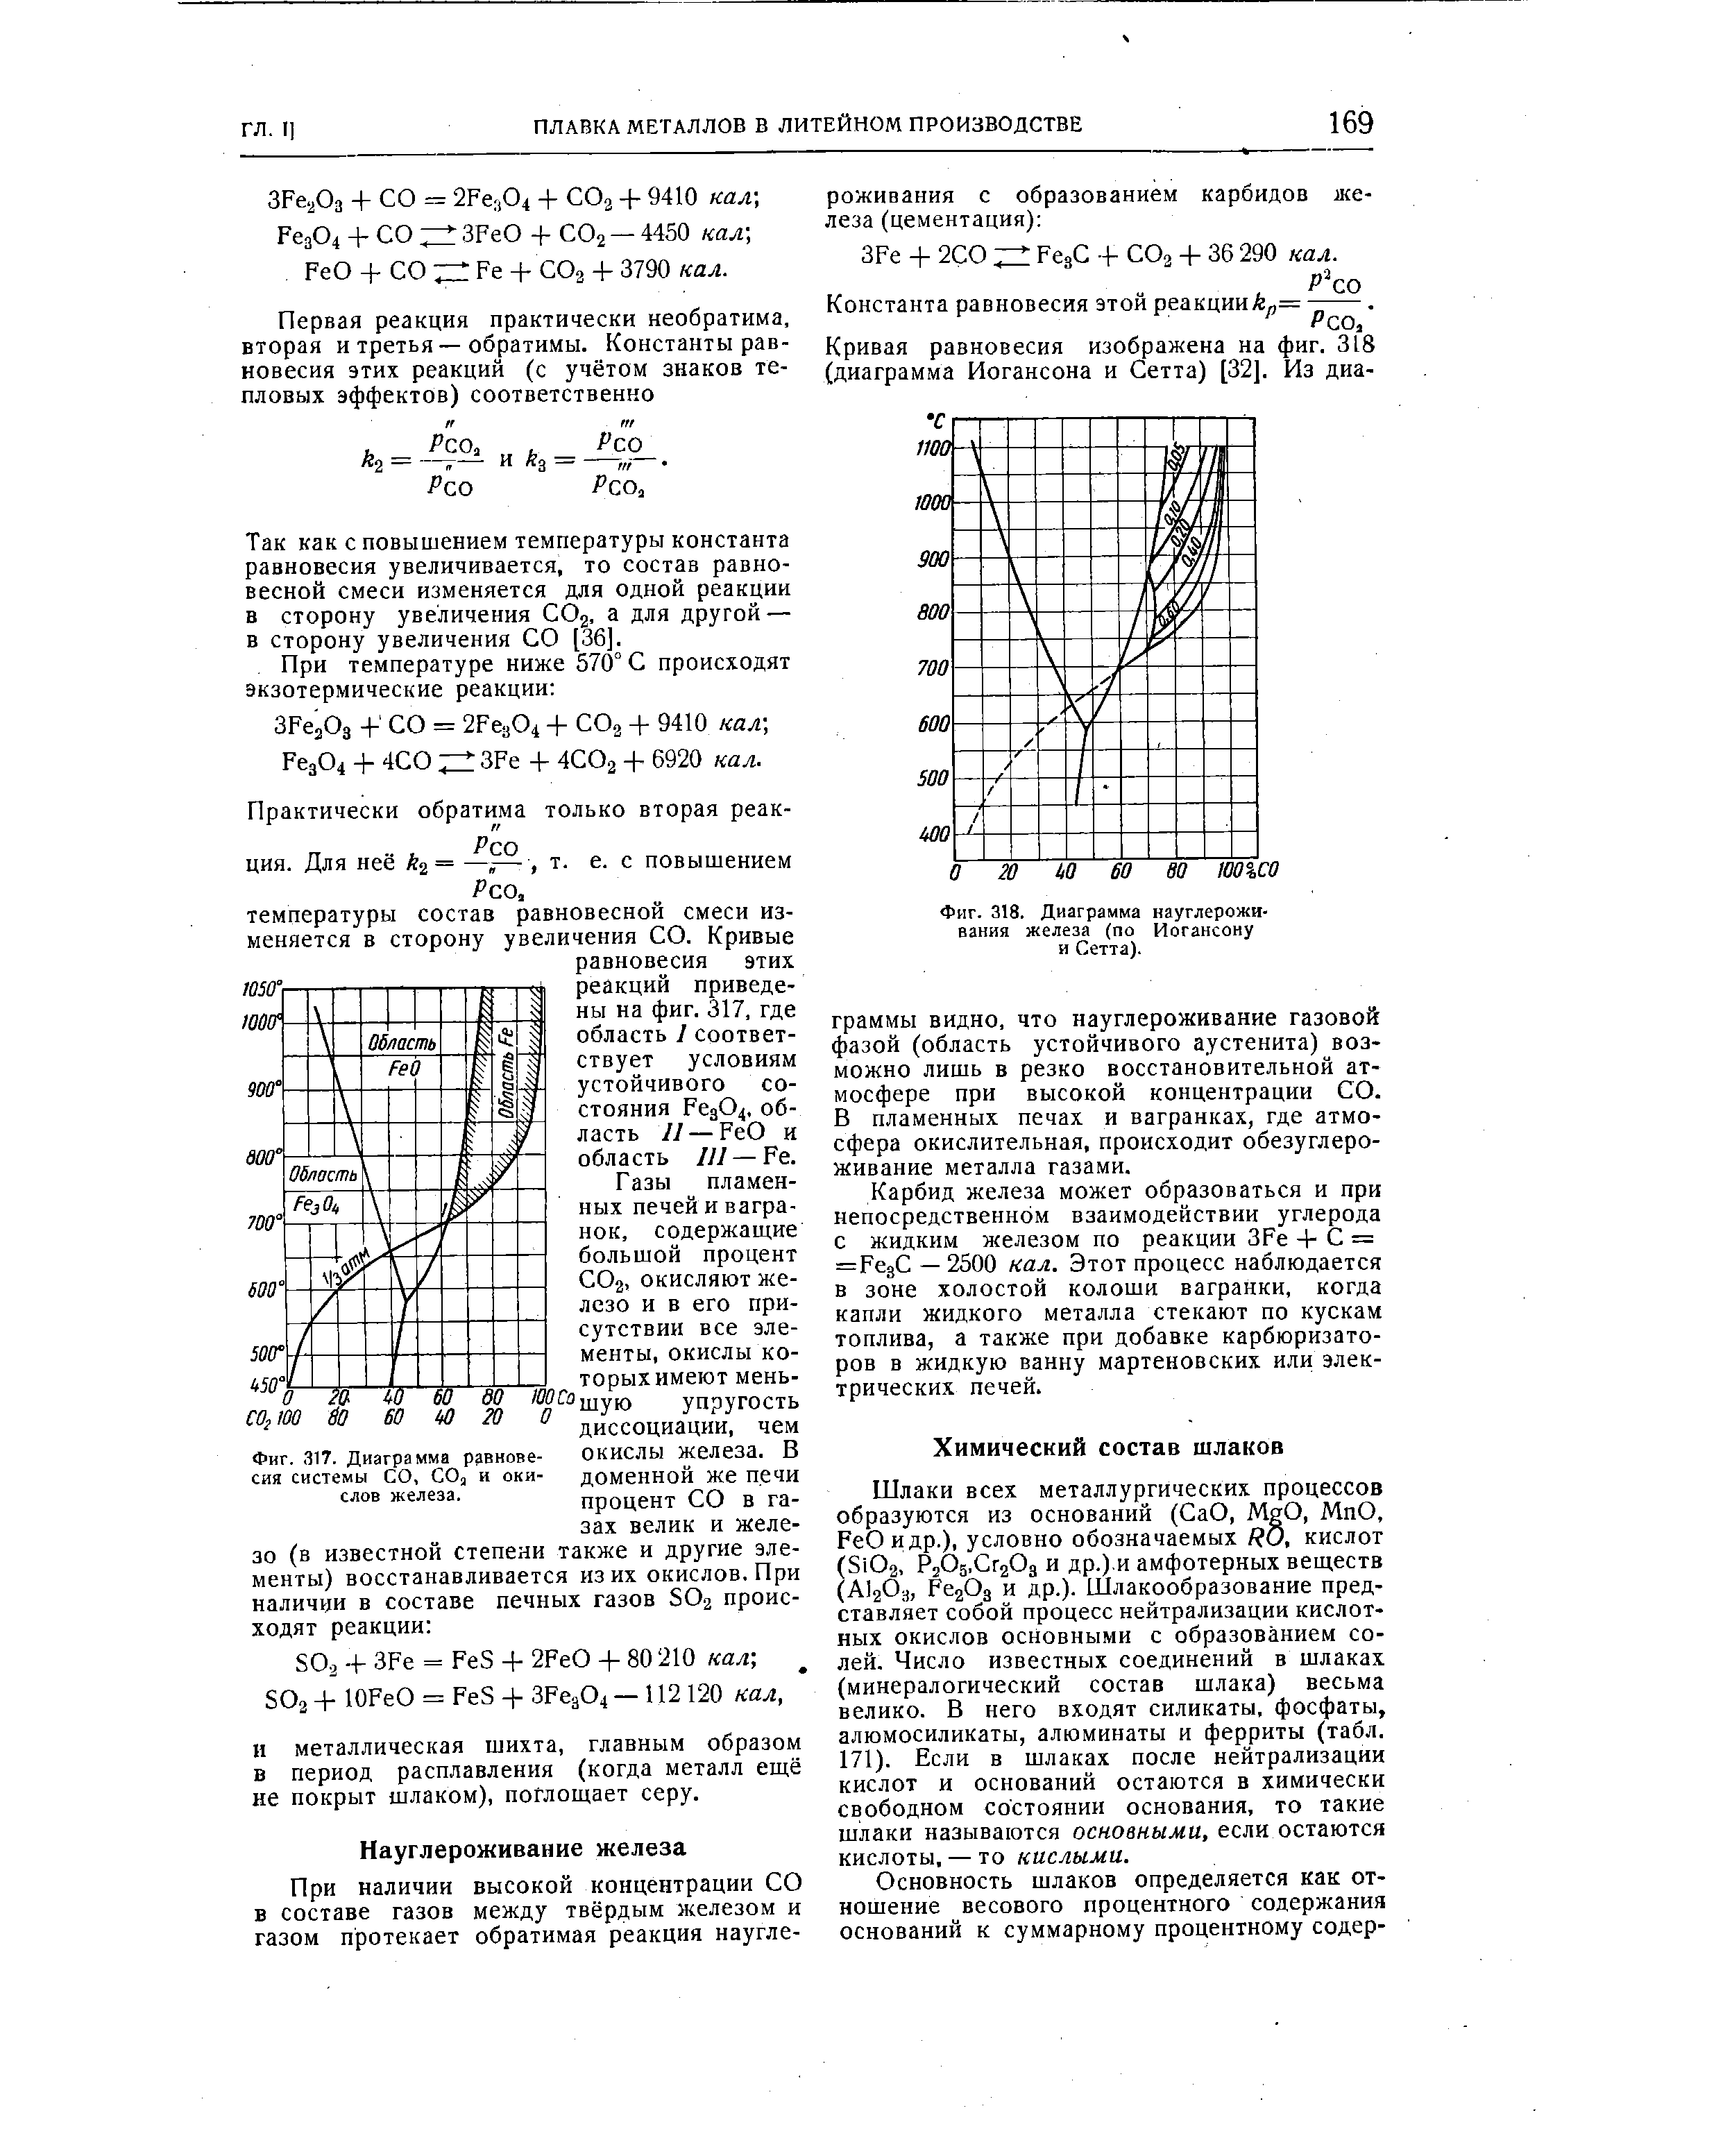 Фиг. 318. Диаграмма науглероживания железа (по Иогансону и Сетта).
